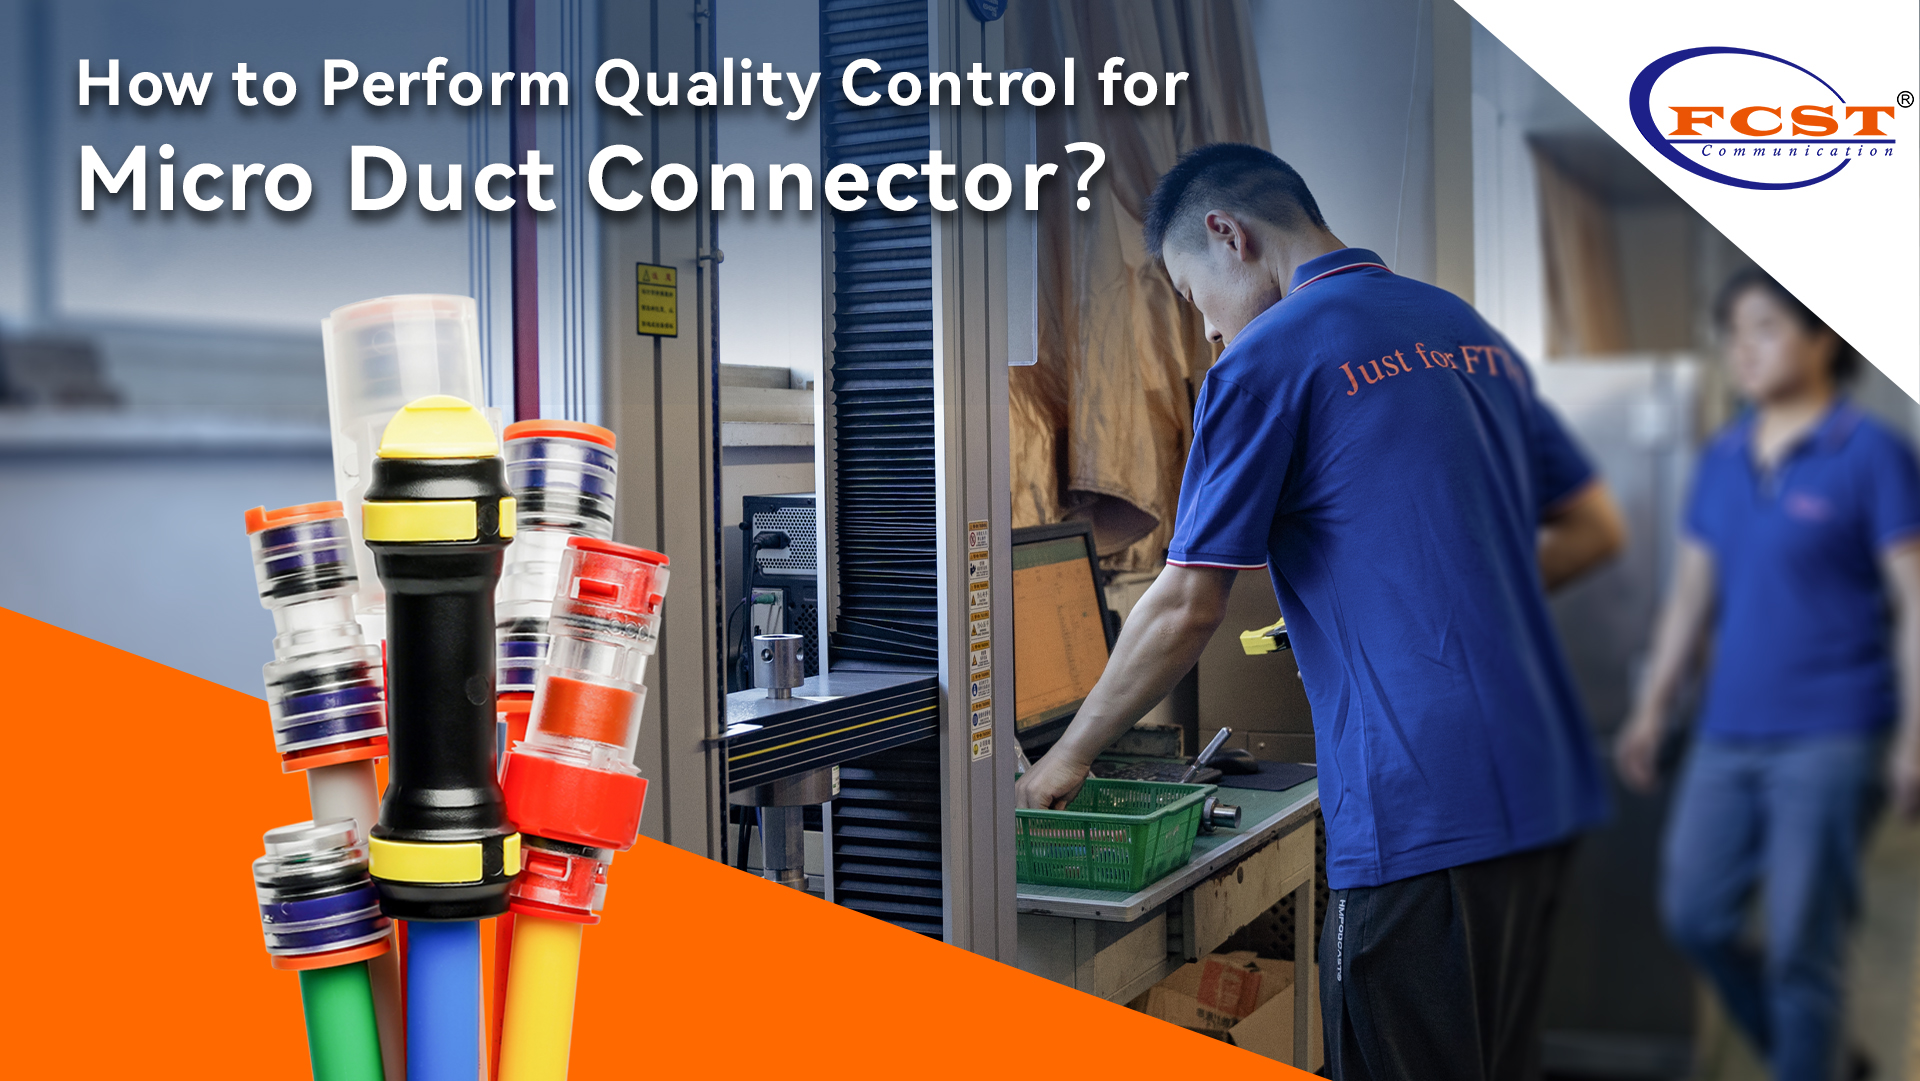 ¿Cómo realizar un control de calidad para los conectores de micro conducto?